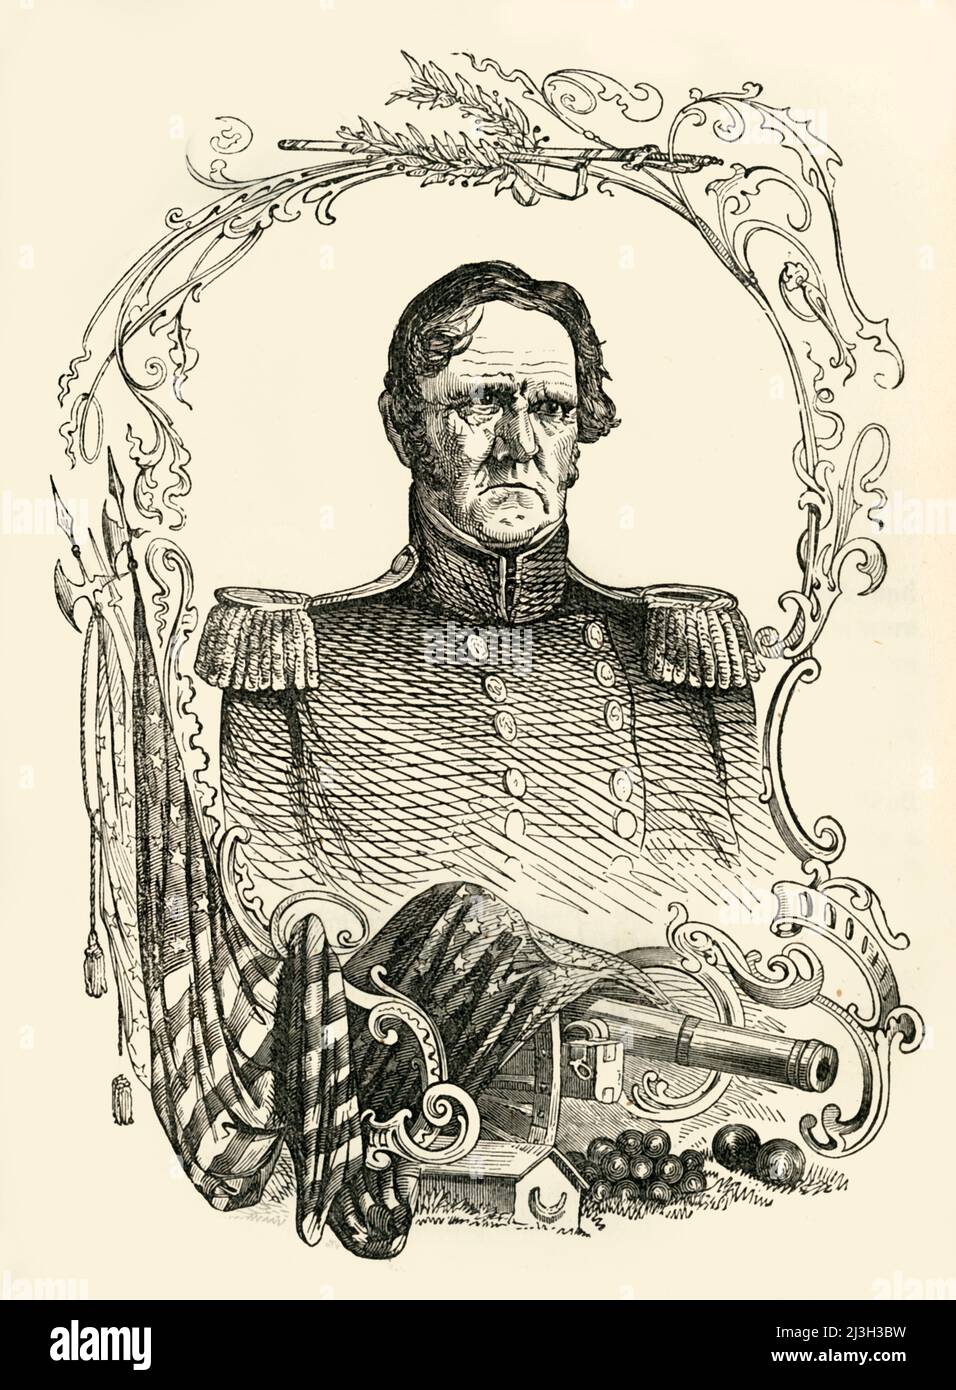 'Major-général Scott', 1849. Le soldat américain Winfield Scott a servi pendant la guerre de 1812, la guerre Mexico-américaine et la guerre civile américaine. De "l'histoire du Mexique et de la guerre mexicaine", par John Frost, LL.D.. [Thomas, Cowperthwait and Co., Philadelphie, 1849] Banque D'Images